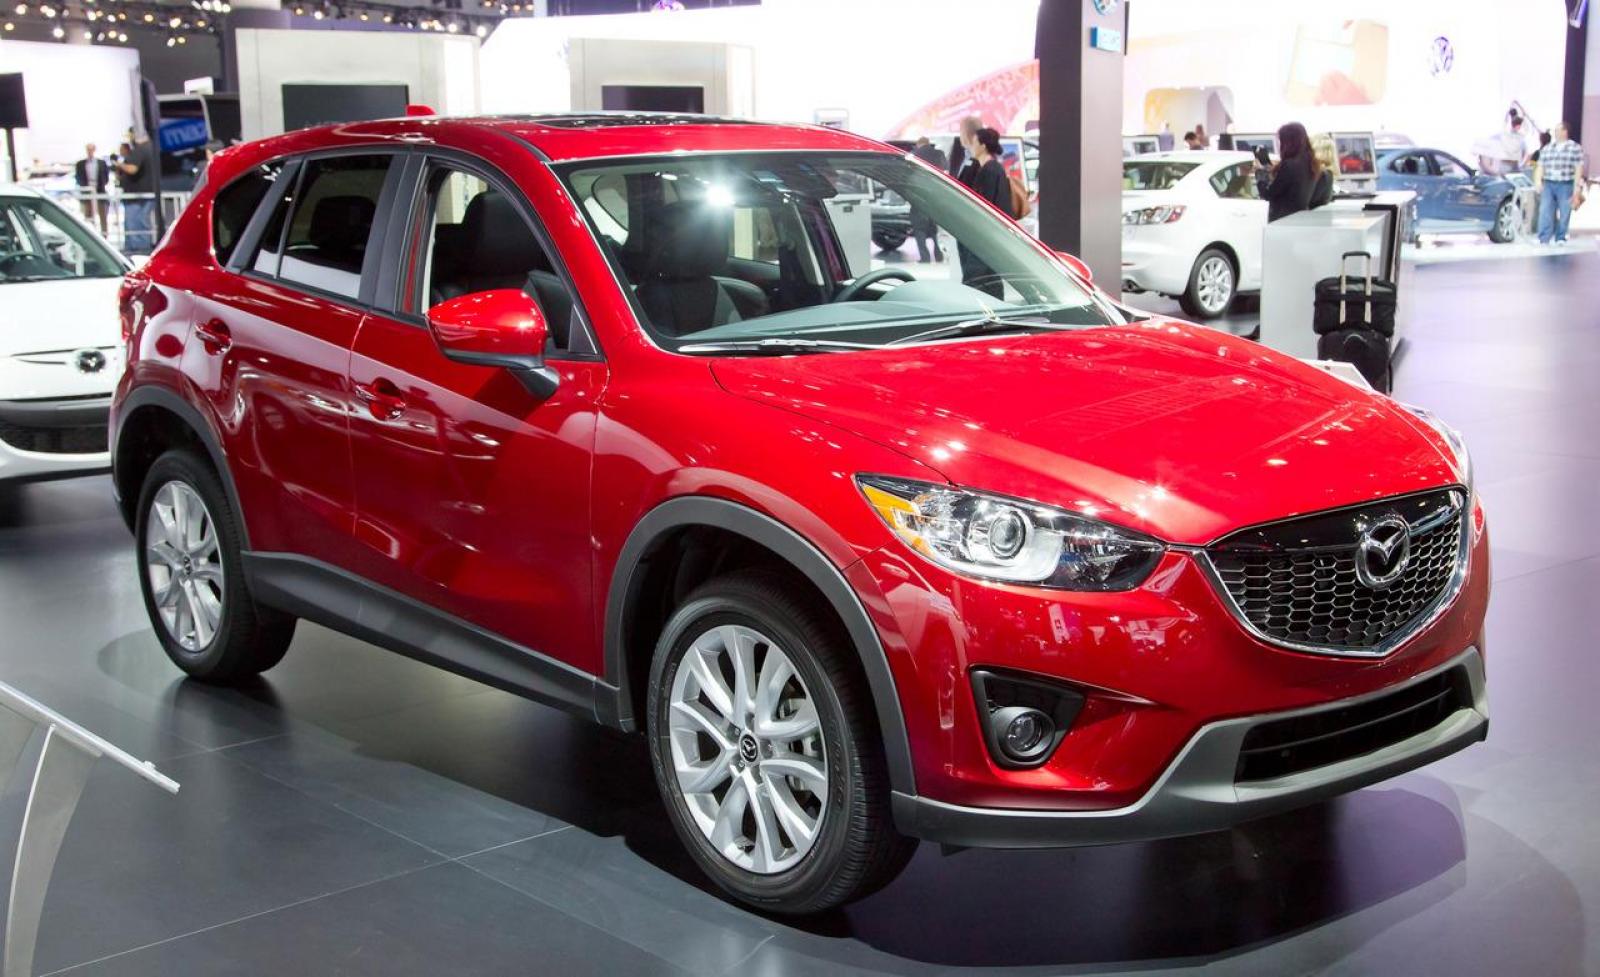 Мазда сх5 2014г. Mazda CX 5 красная 2014. Мазда СХ-5 2014 красный. Машина Мазда СХ-5 красный. Мазда cx5 красная.